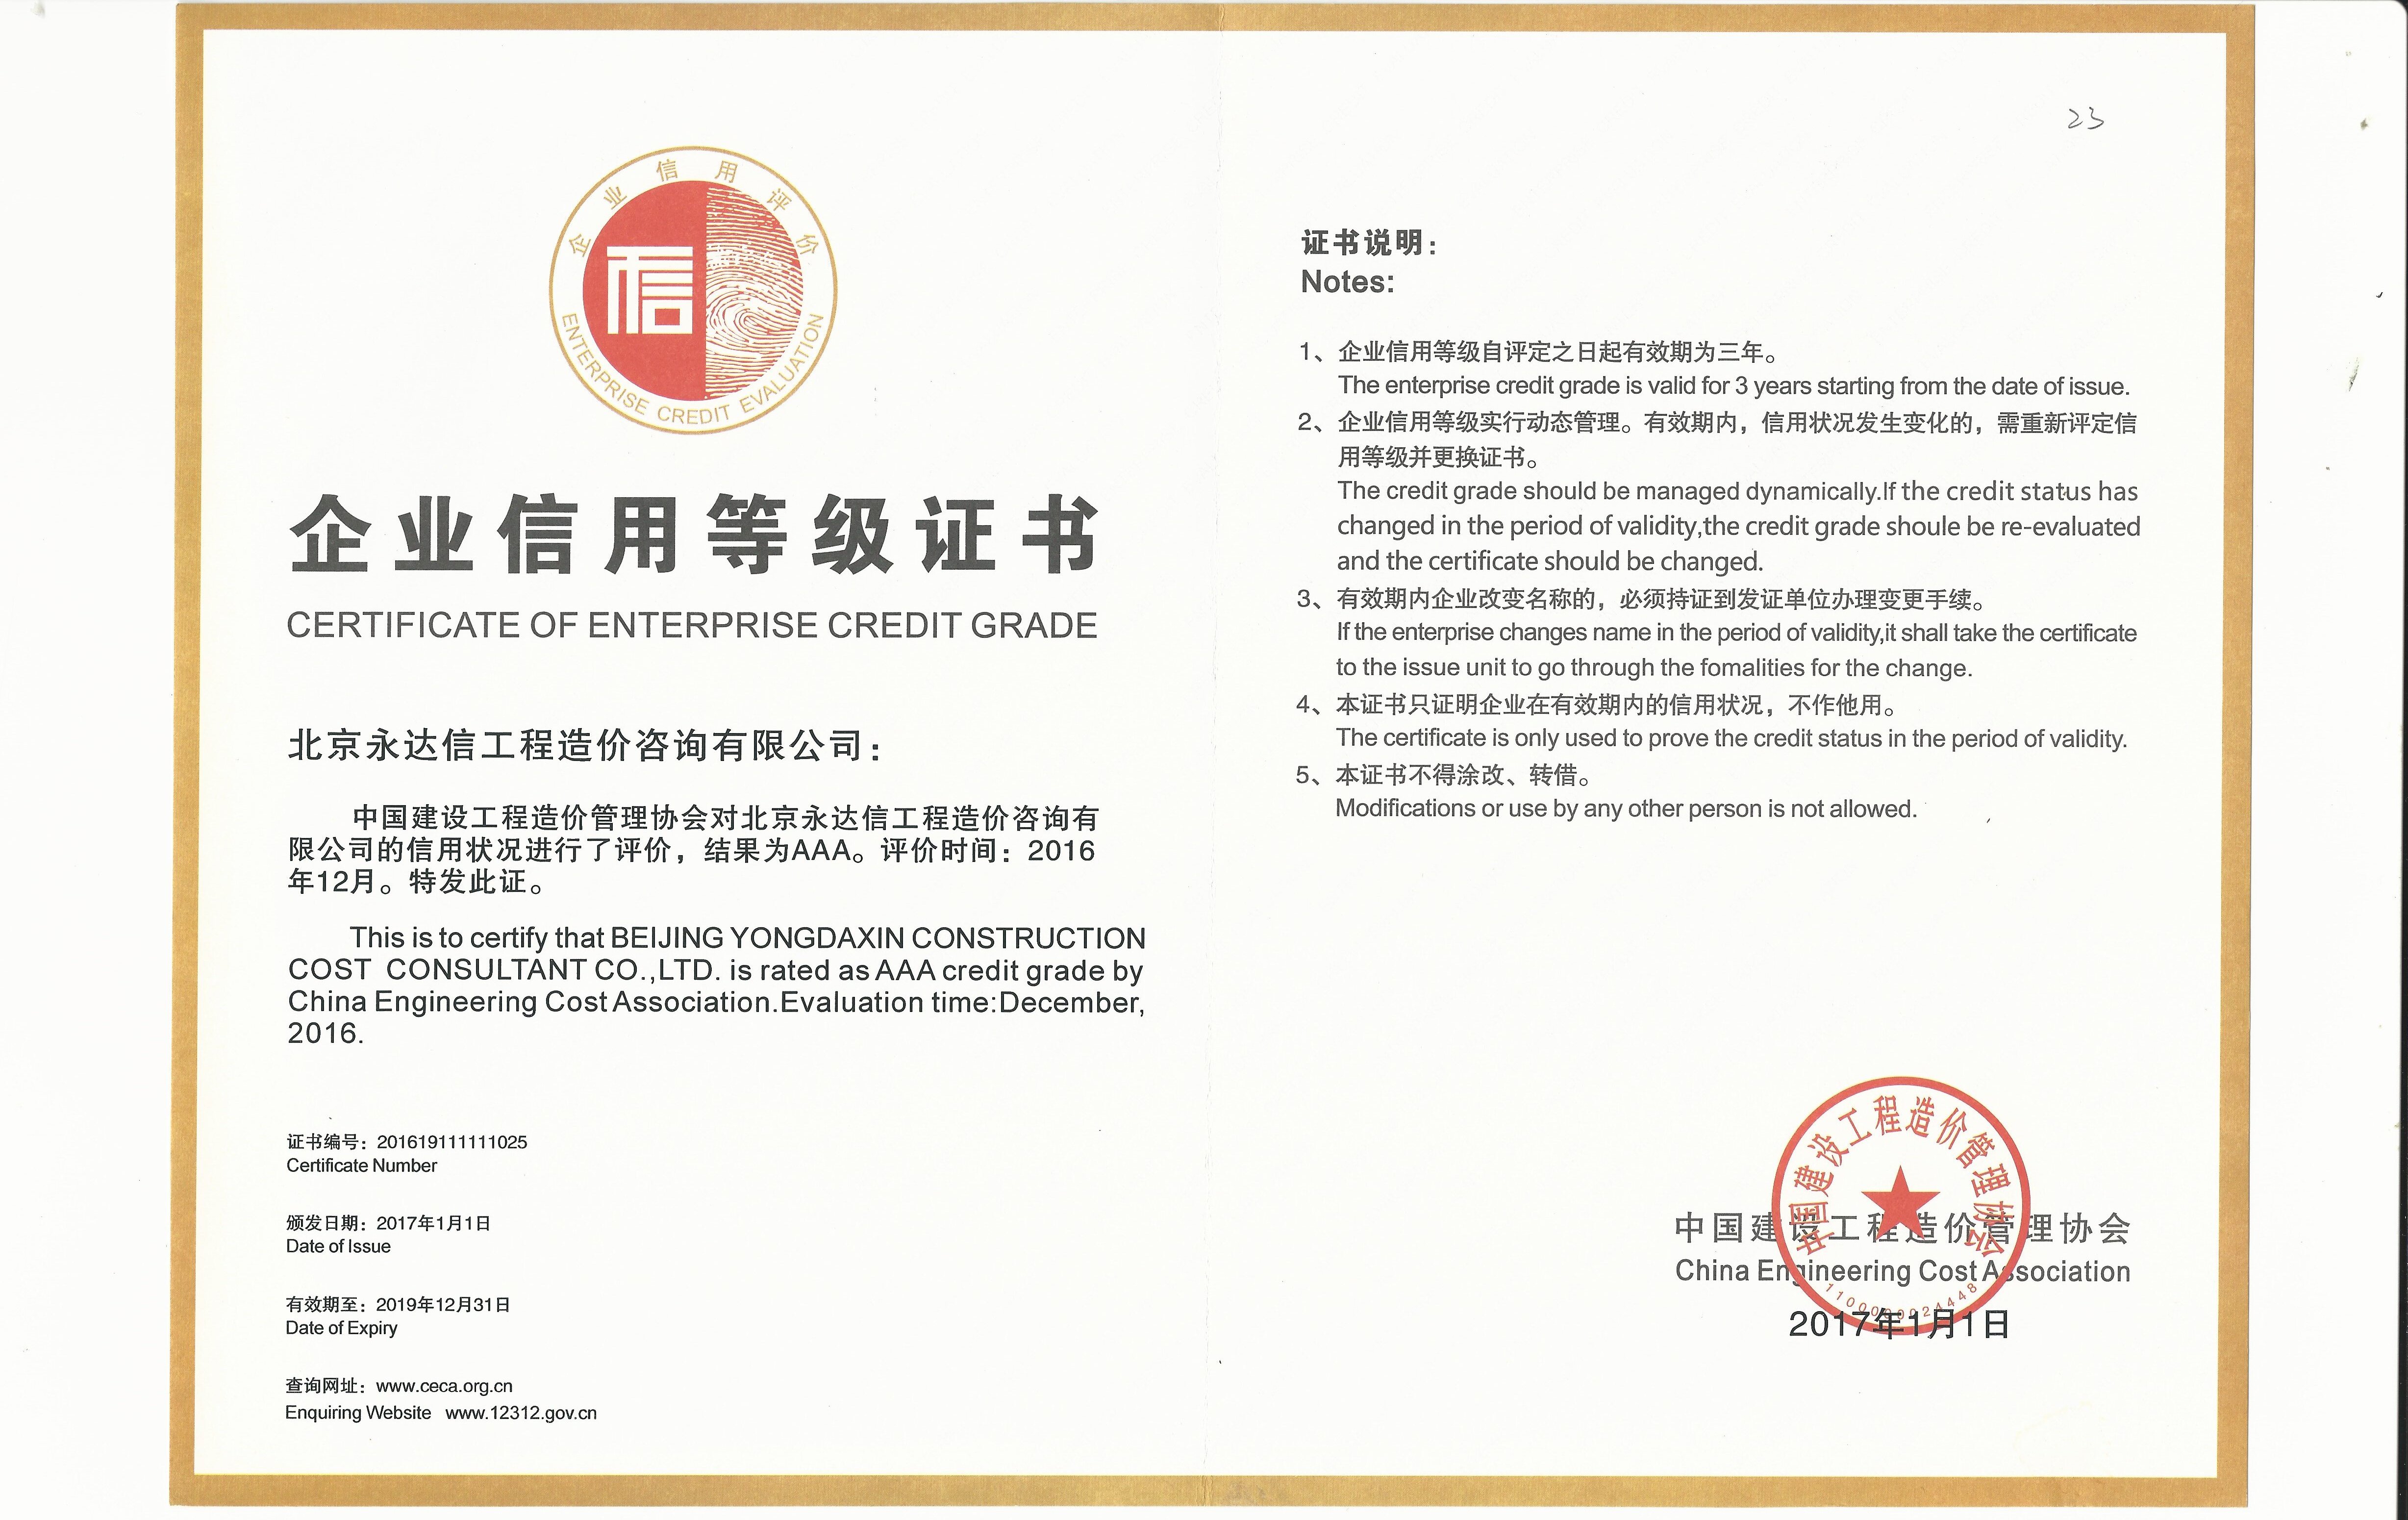 北京永达信被评为“中国建设工程造价管理协会信用评价等级”